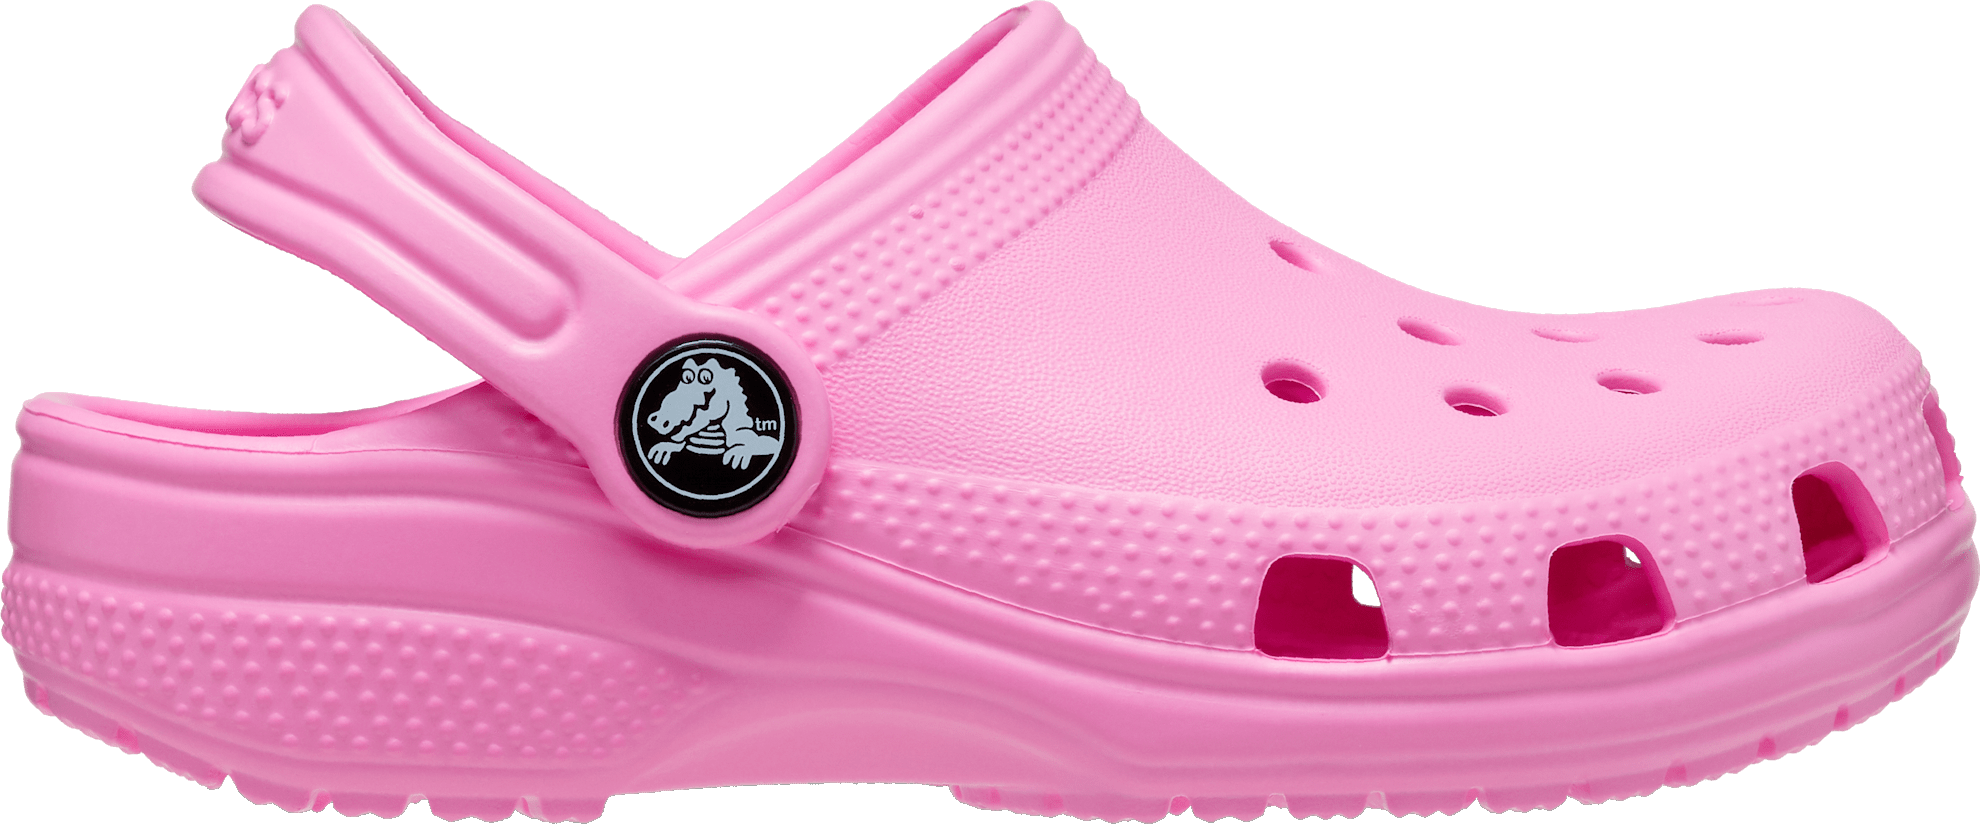 Crocs Kids’ Classic Clog Taffy Pink